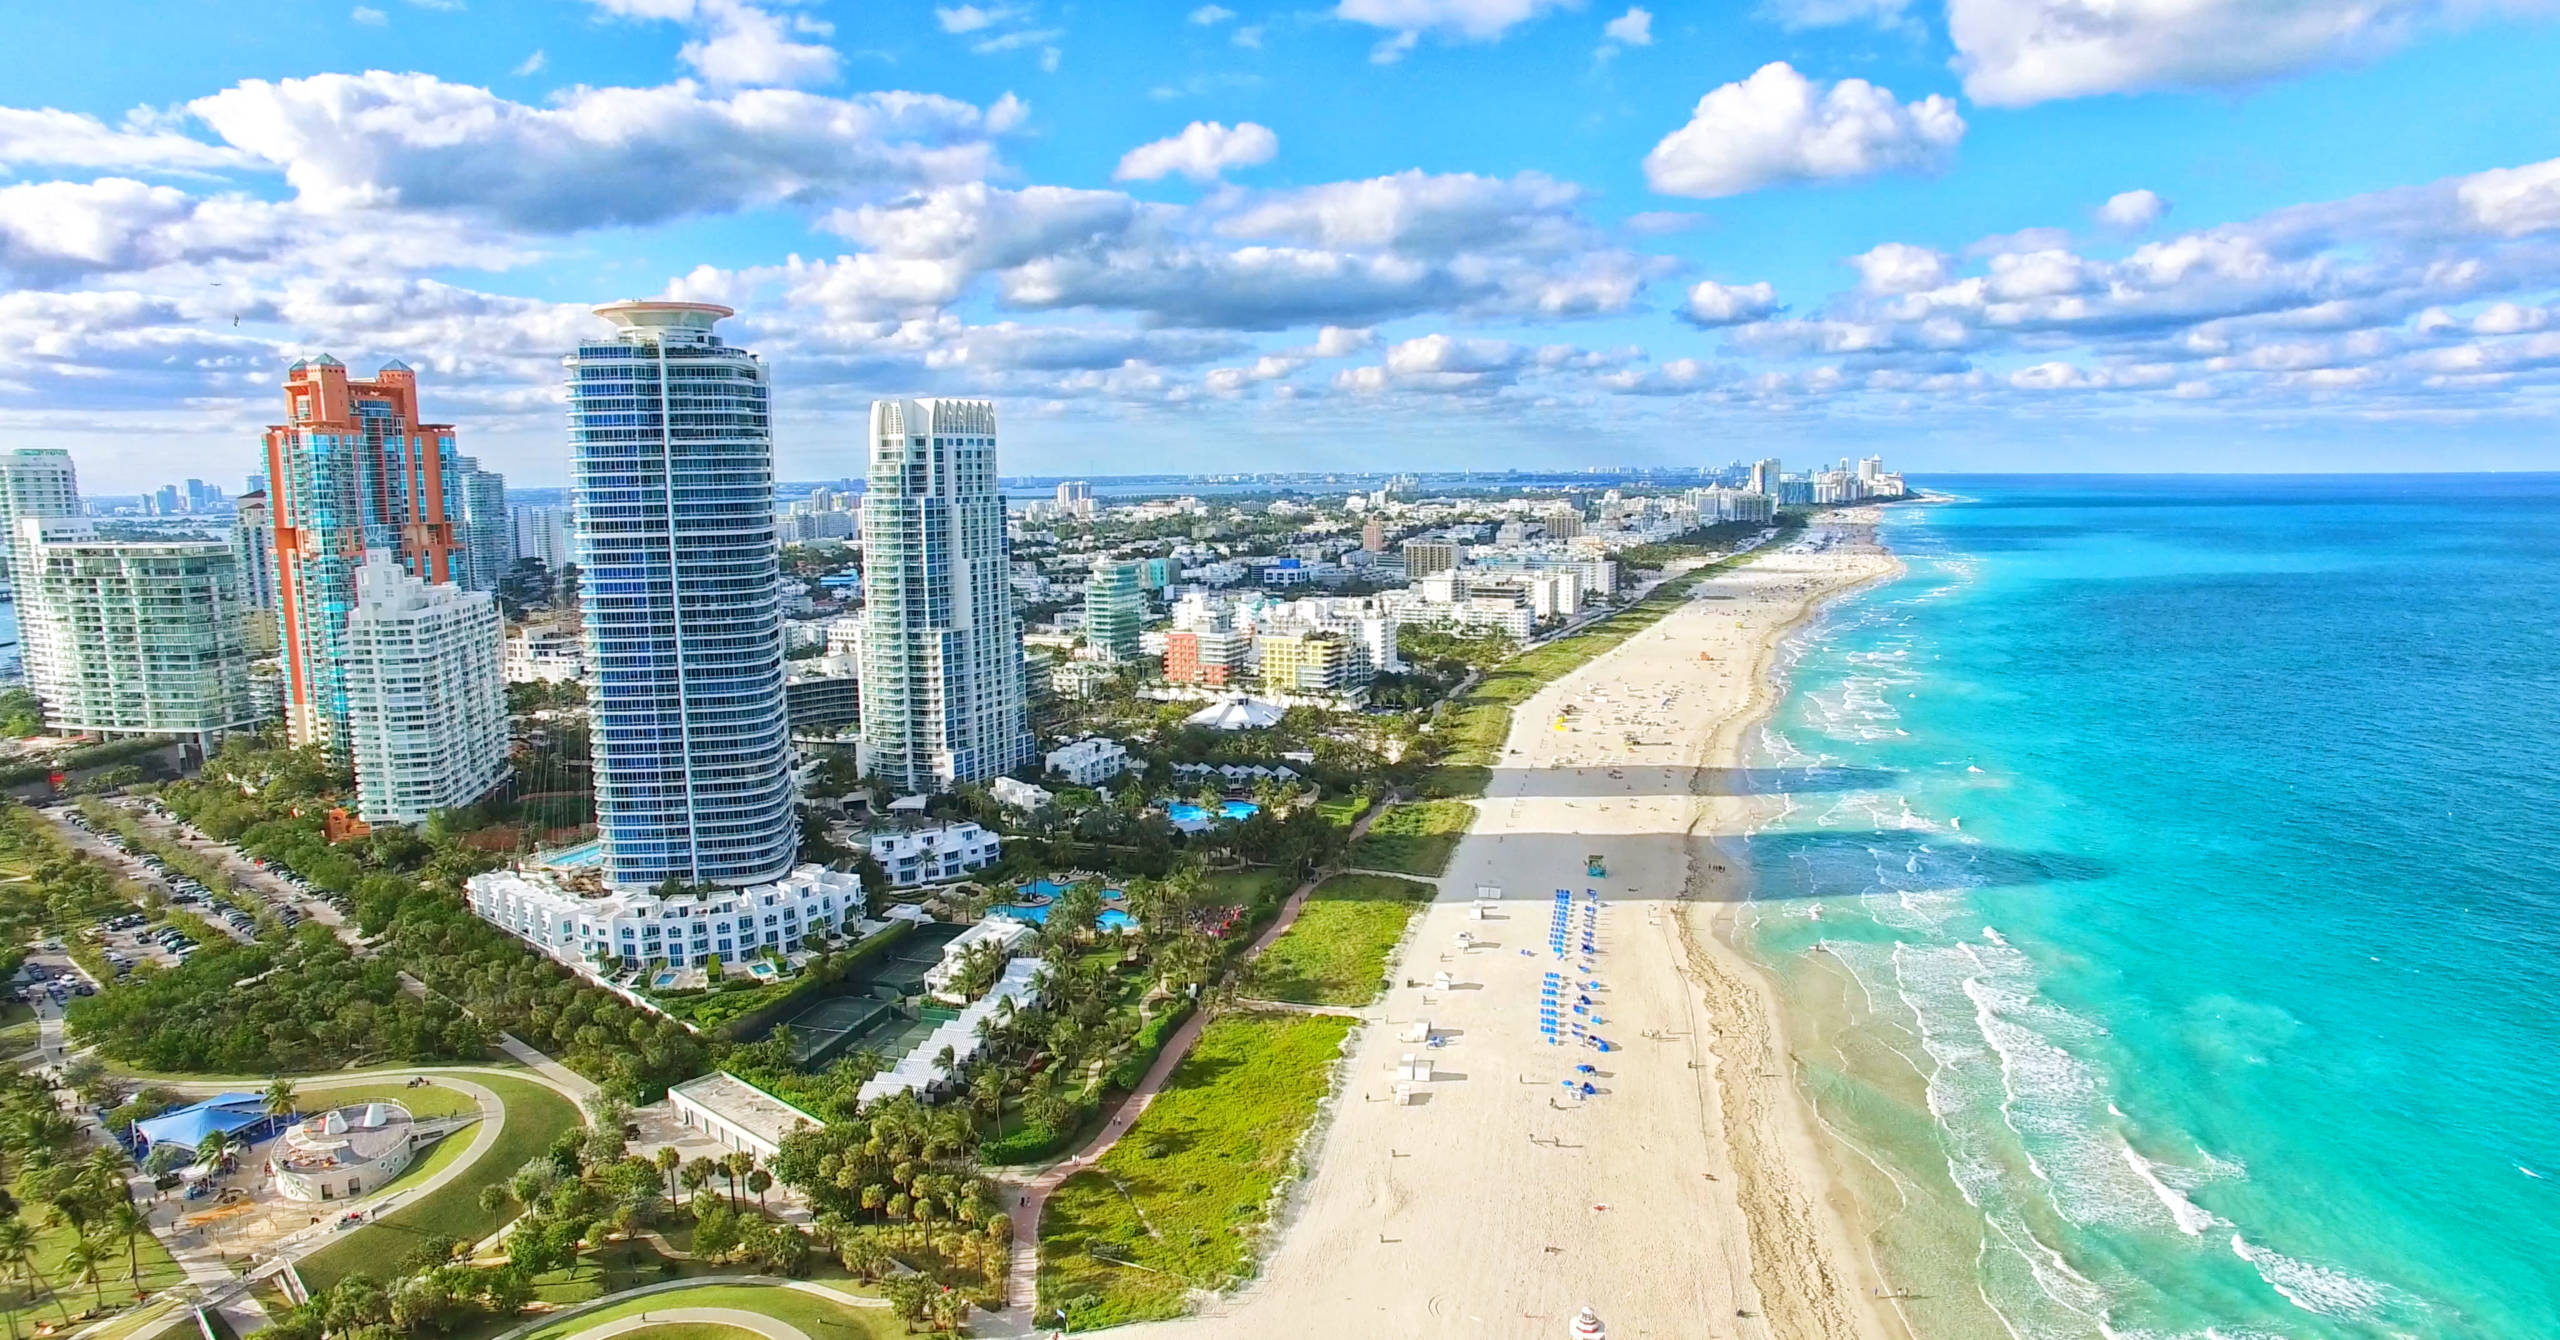 Miami via Shutterstock